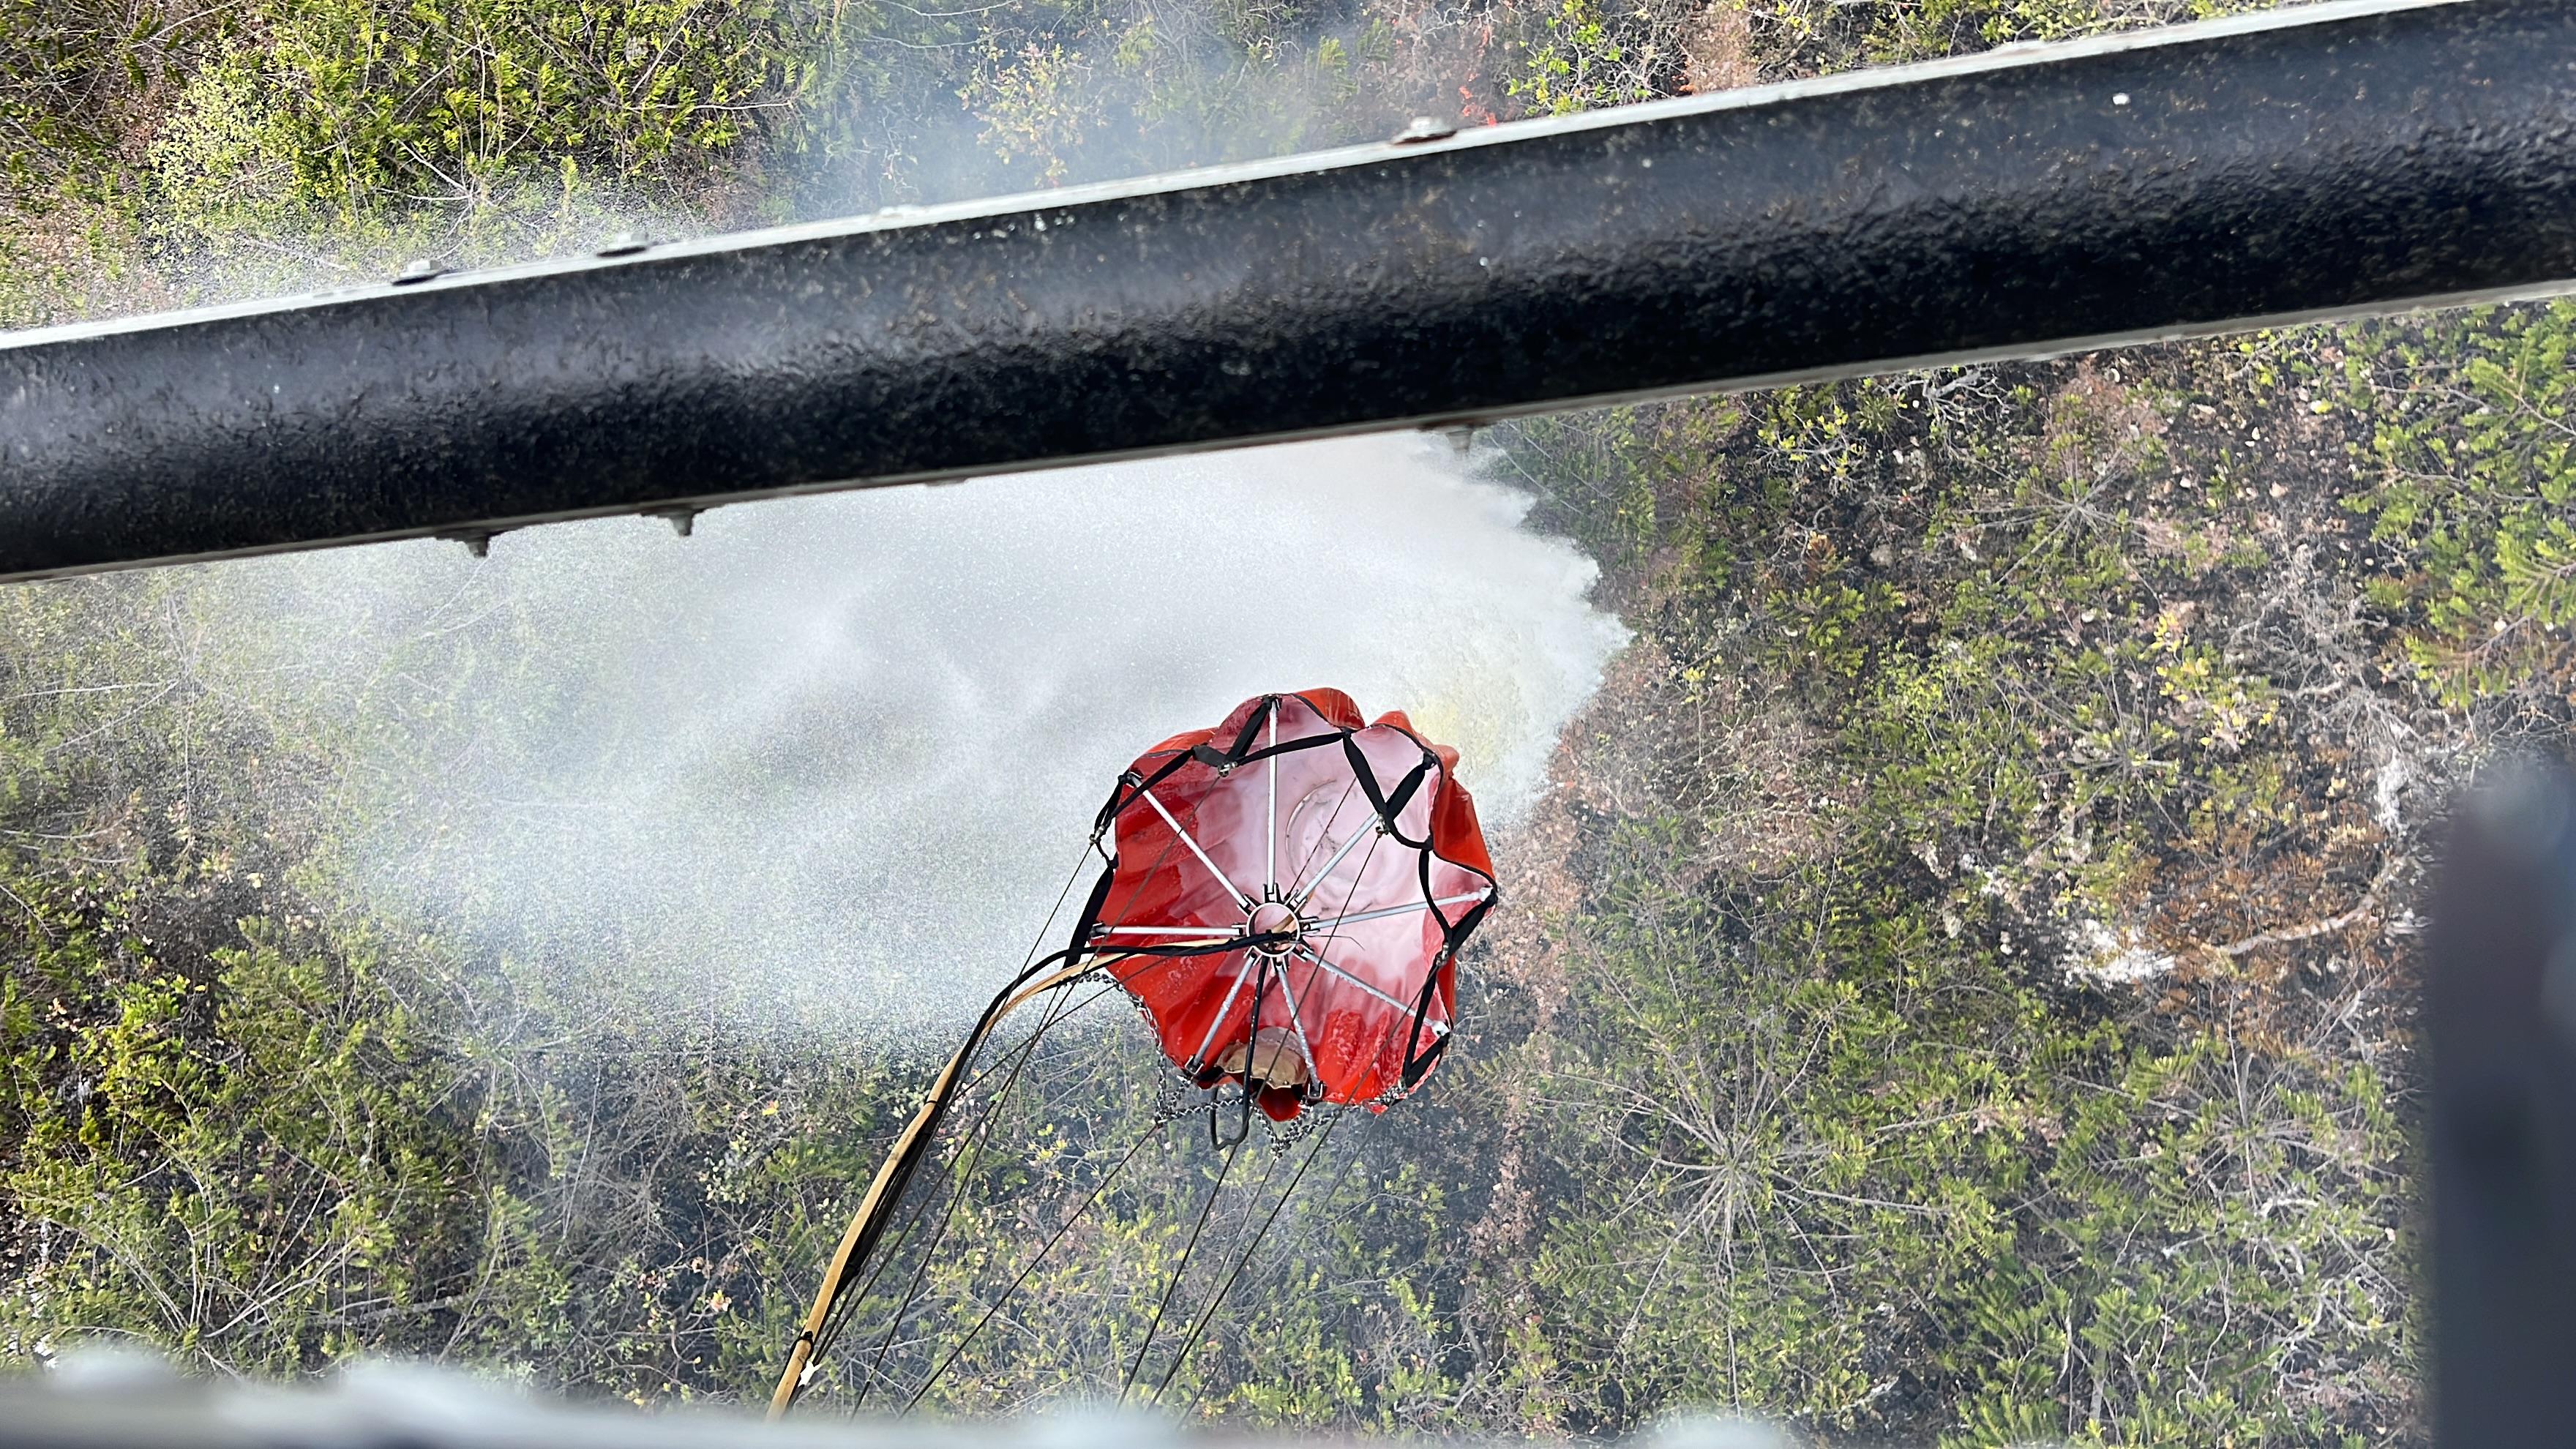 Extinguido incendio forestal registrado en zona rural entre Purificación y Prado, en el Tolima